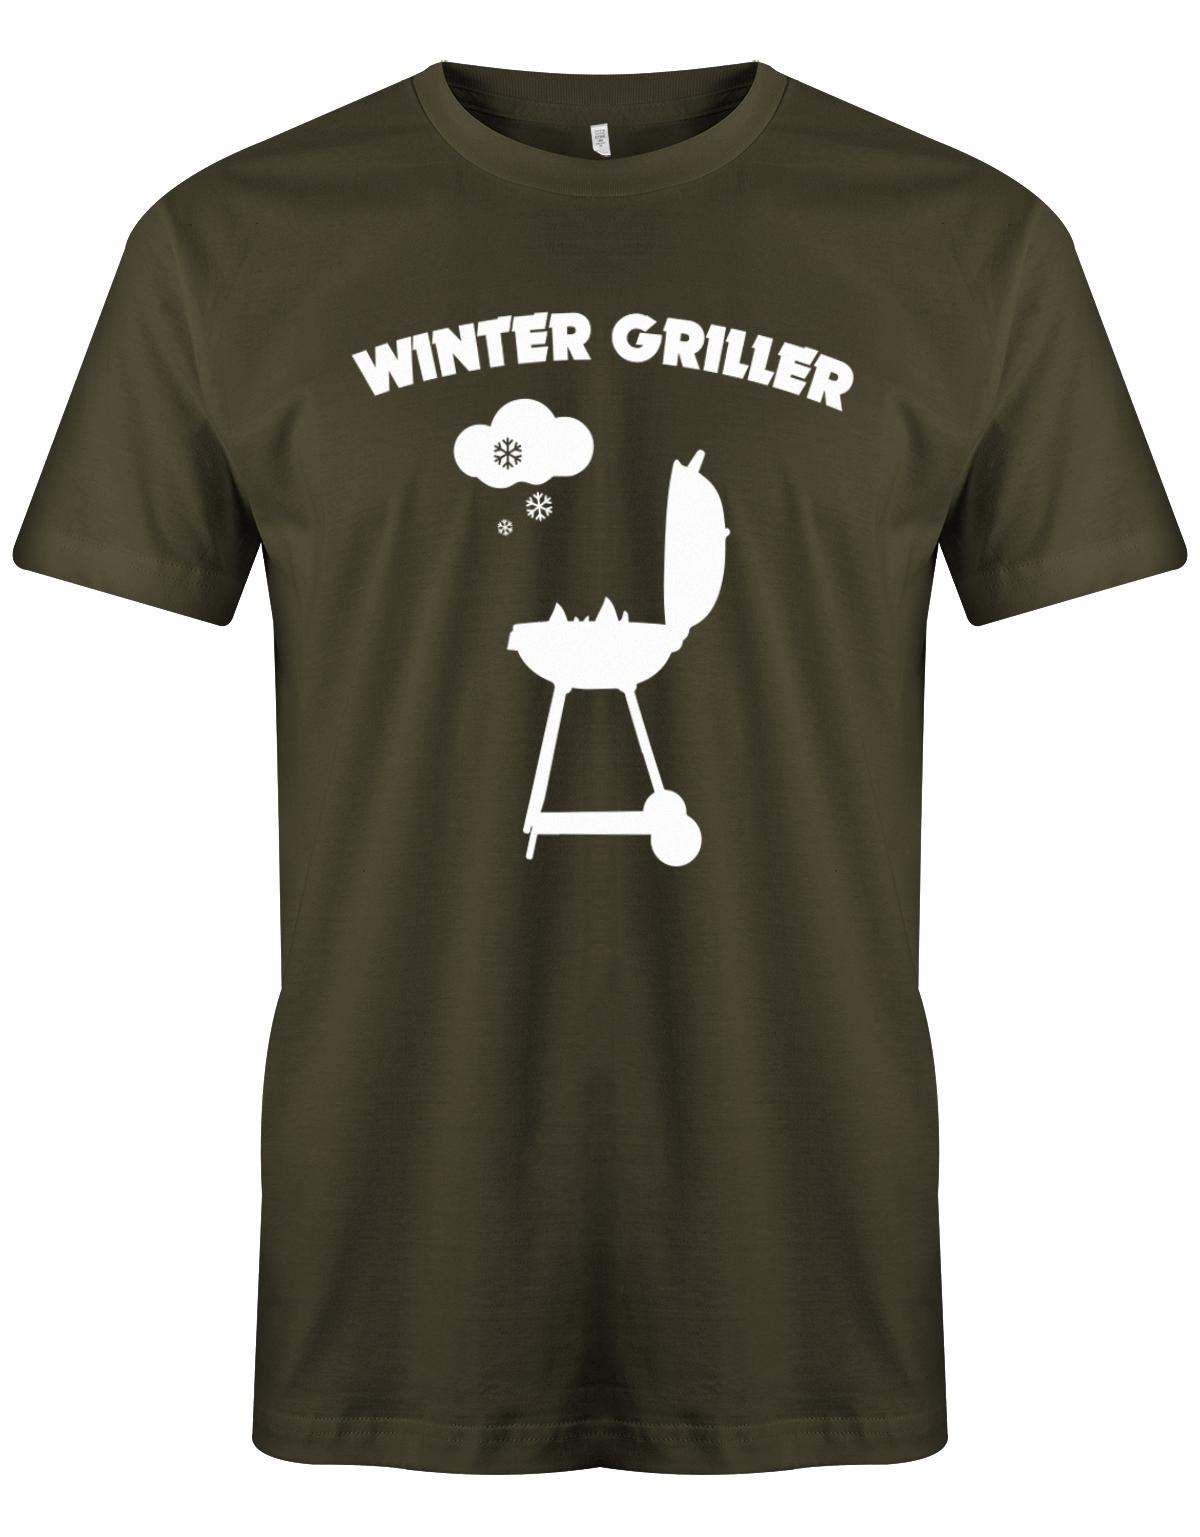 Winter-Griller-Schnee-Herren-Grill-Shirt-Army